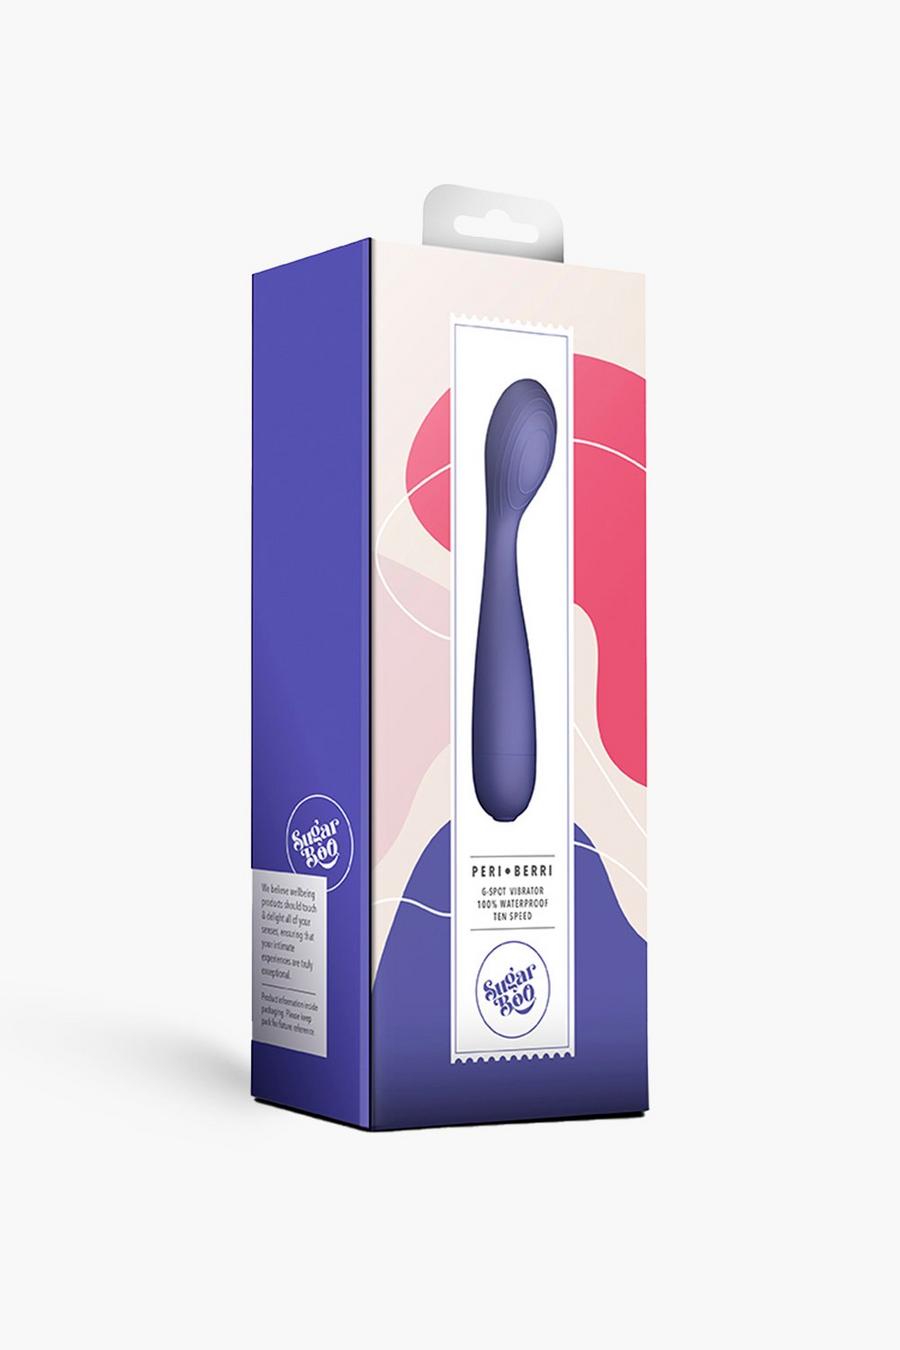 Peri-berry G Spot Silicone Vibrator, Purple violet